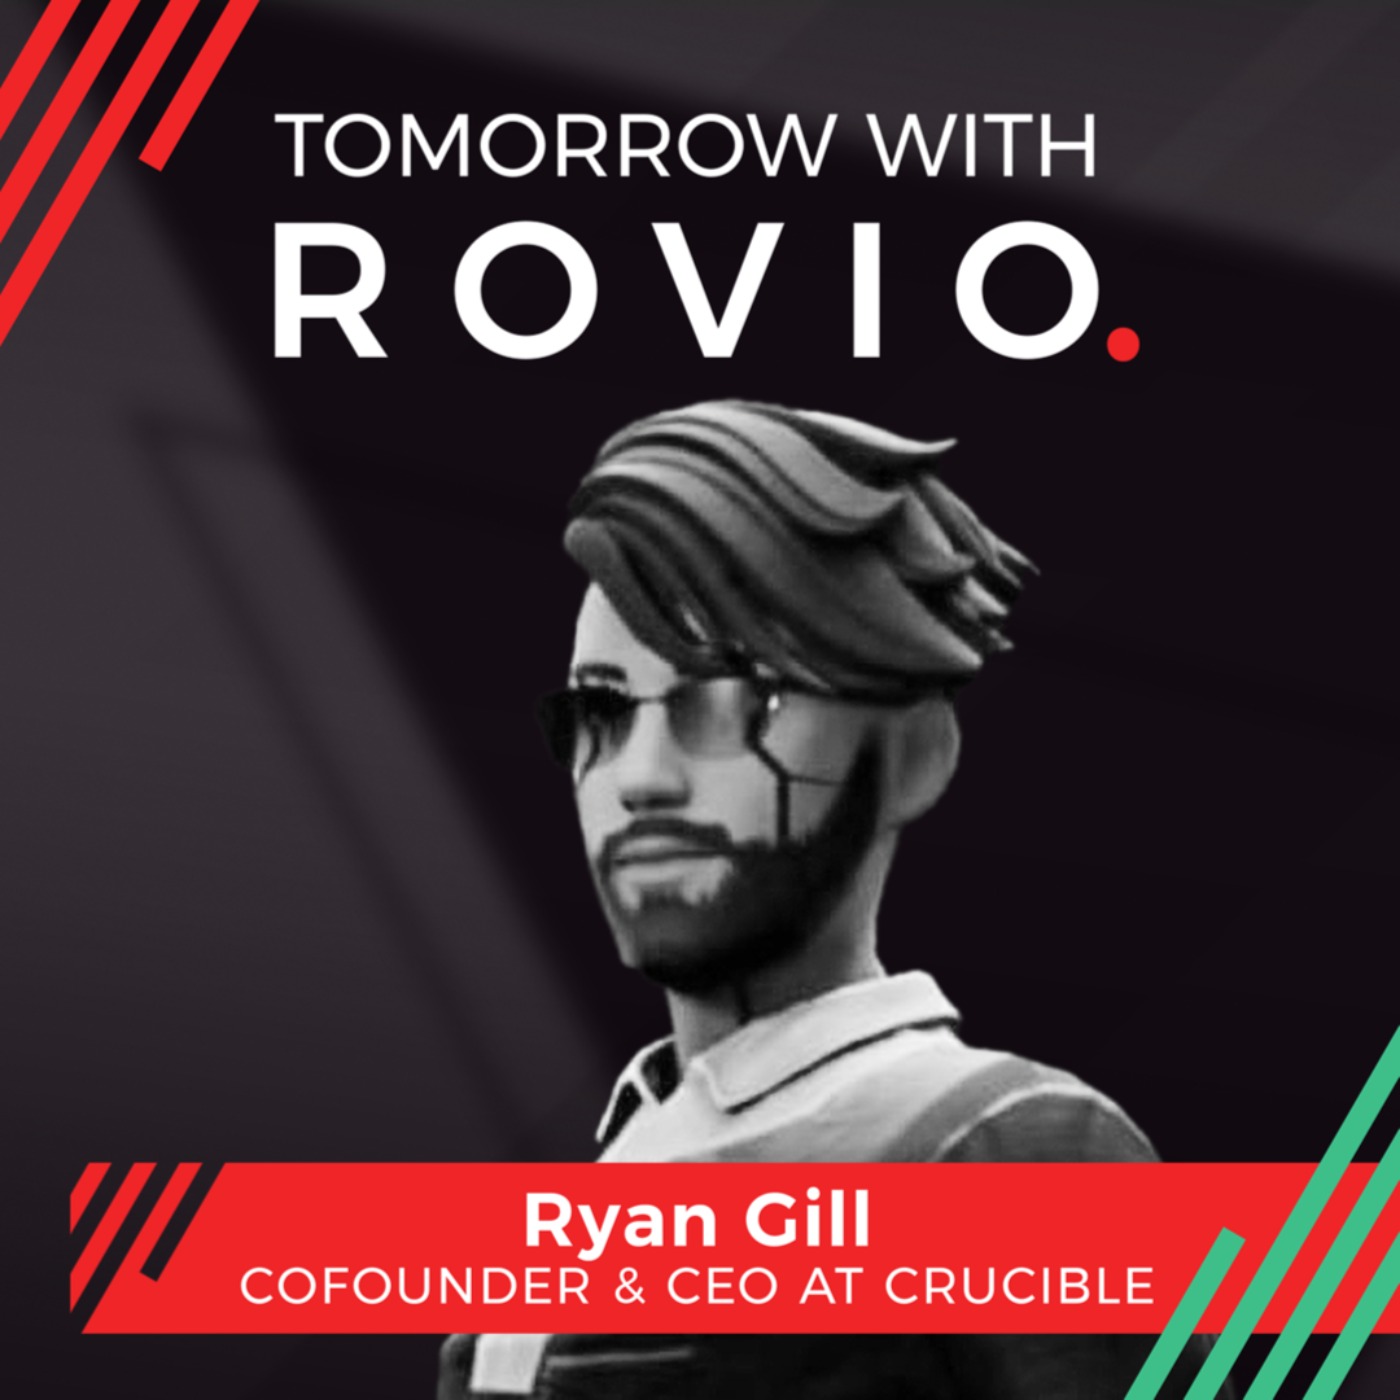 Ryan Gill - CEO at Crucible - talks open Metaverse & Crypto